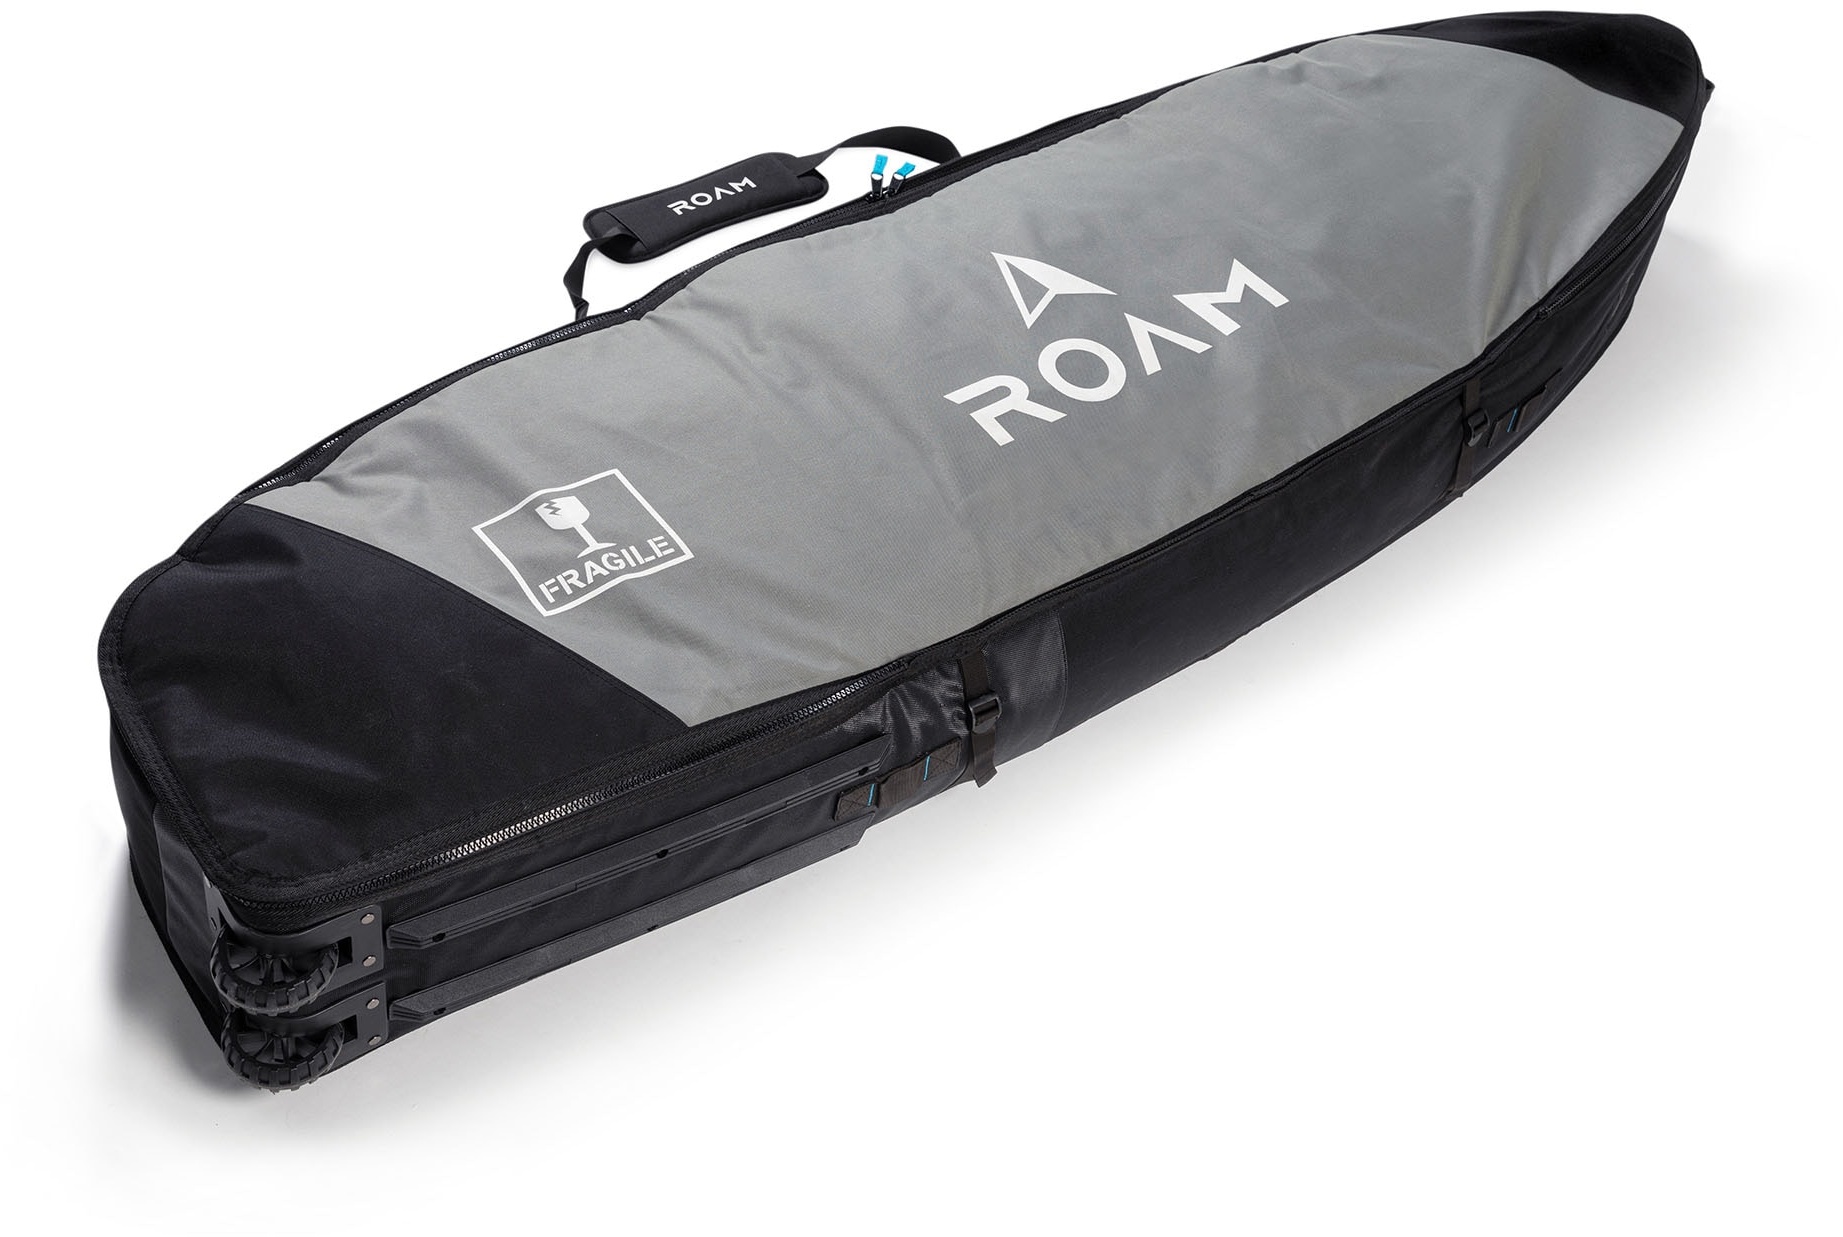 Roam Boardbag Surfboard Coffin Wheelie bag travel reise, Länge in Fuß: 7.6, Breite in inch: 26.5